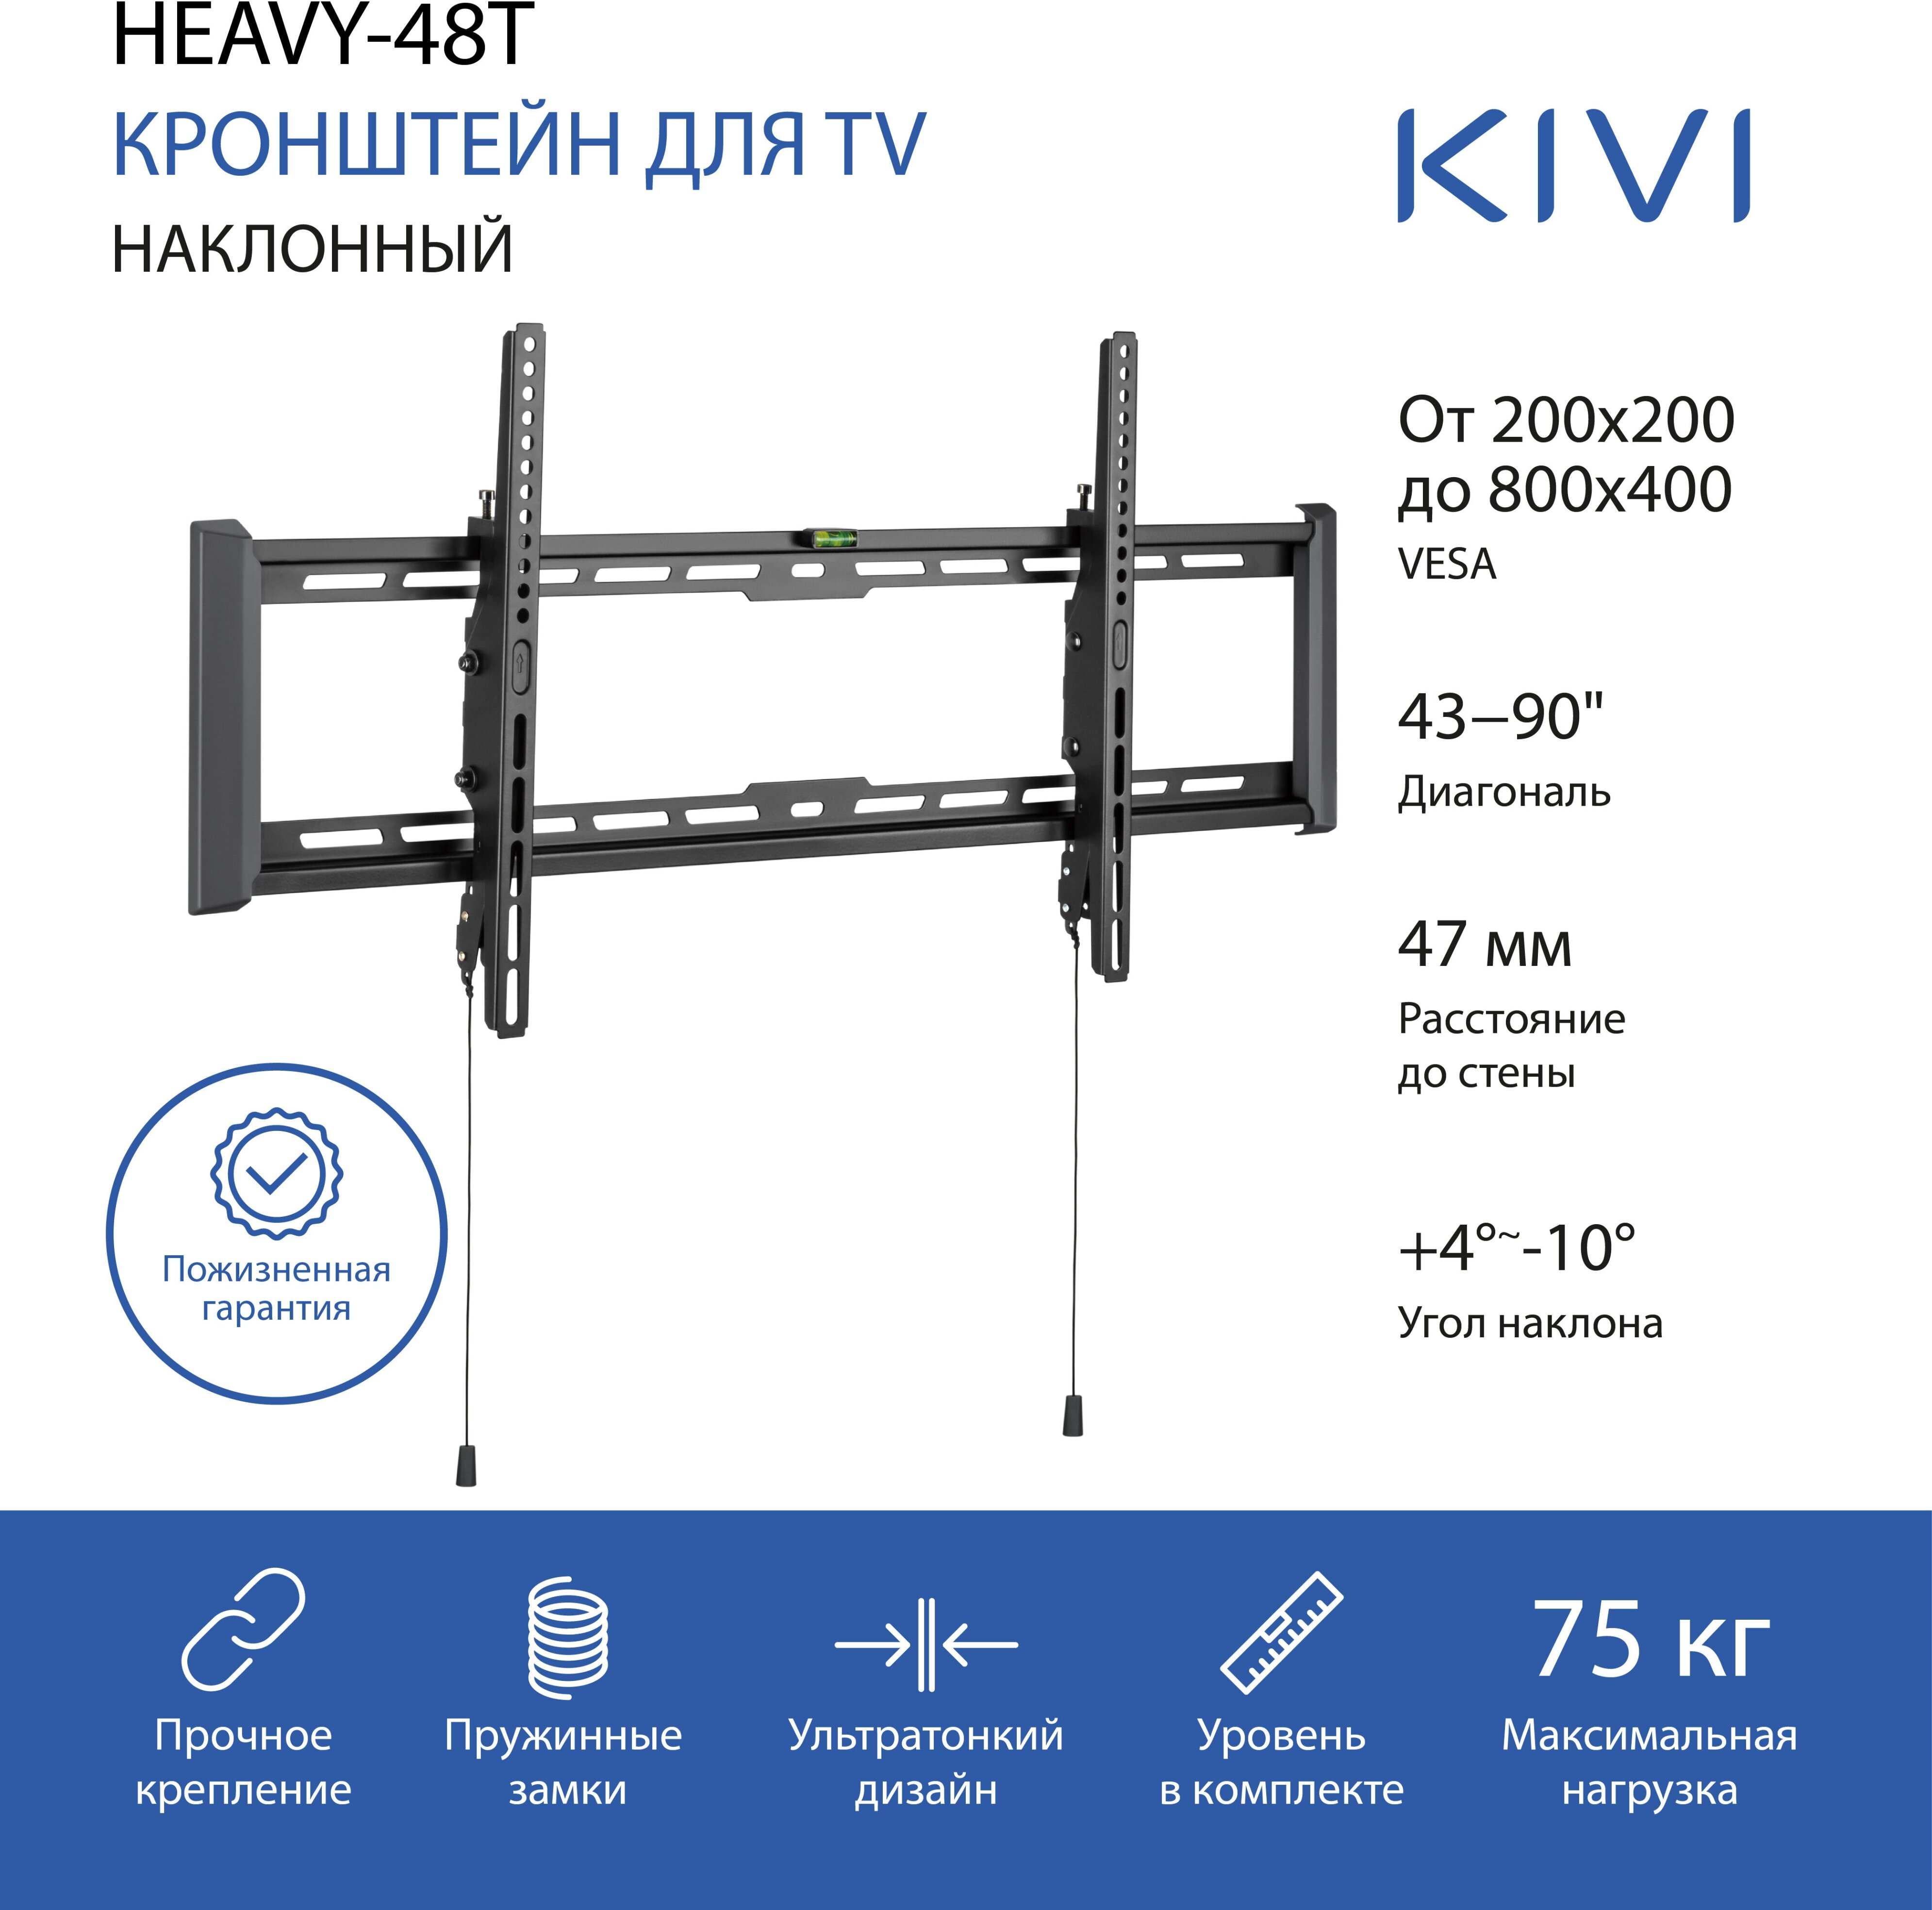 Кронштейн настенный для телевизоров KIVI HEAVY-48T, 43"-90", VESA 200x200мм-800x400мм, наклонный, до 75 кг, черный (KIV-HEAVY-48T-BK)